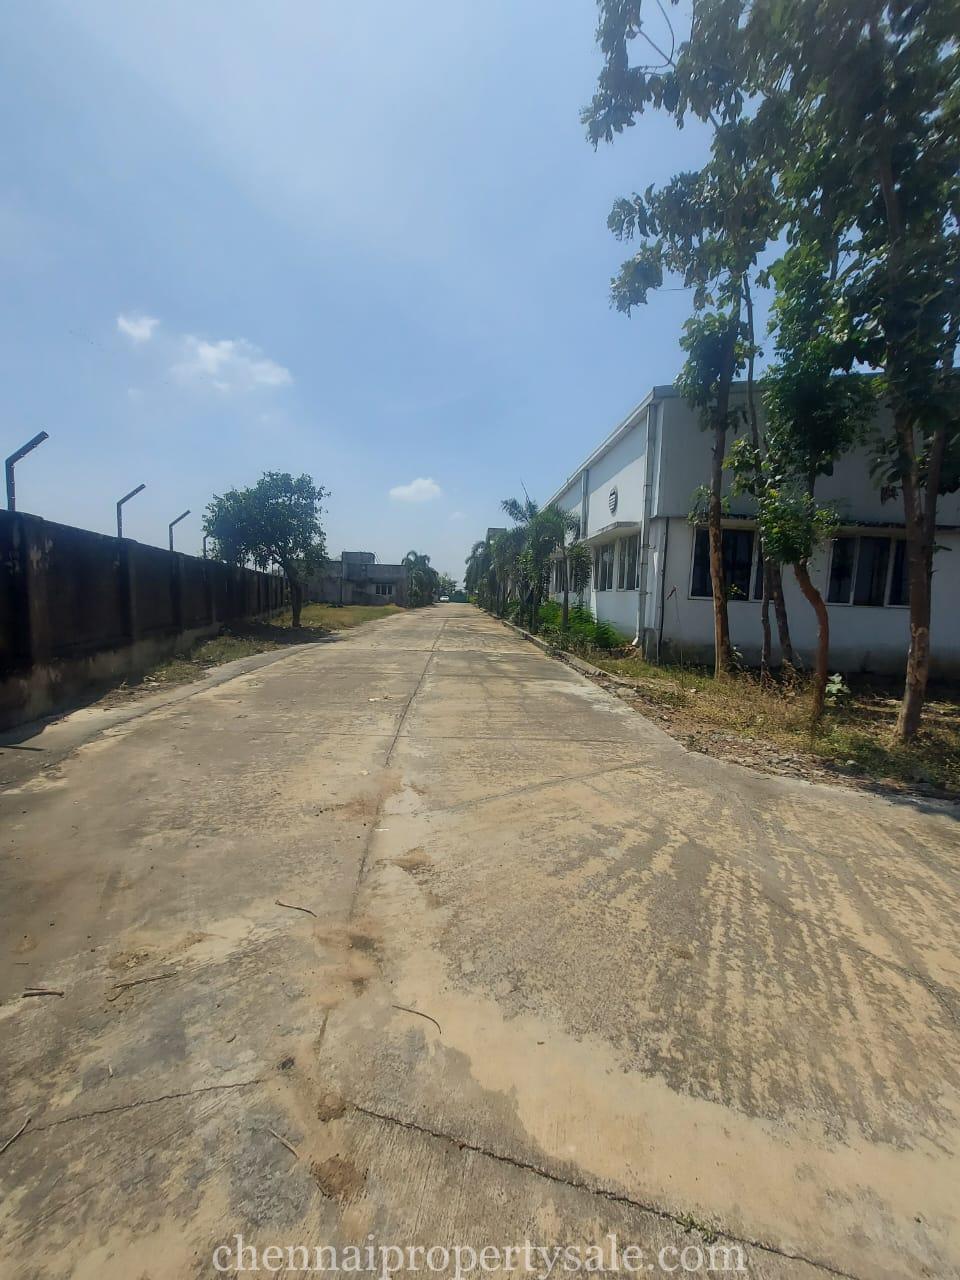 Warehouse for sale chennai - periyapalaiyam ( tirupathi ) highway